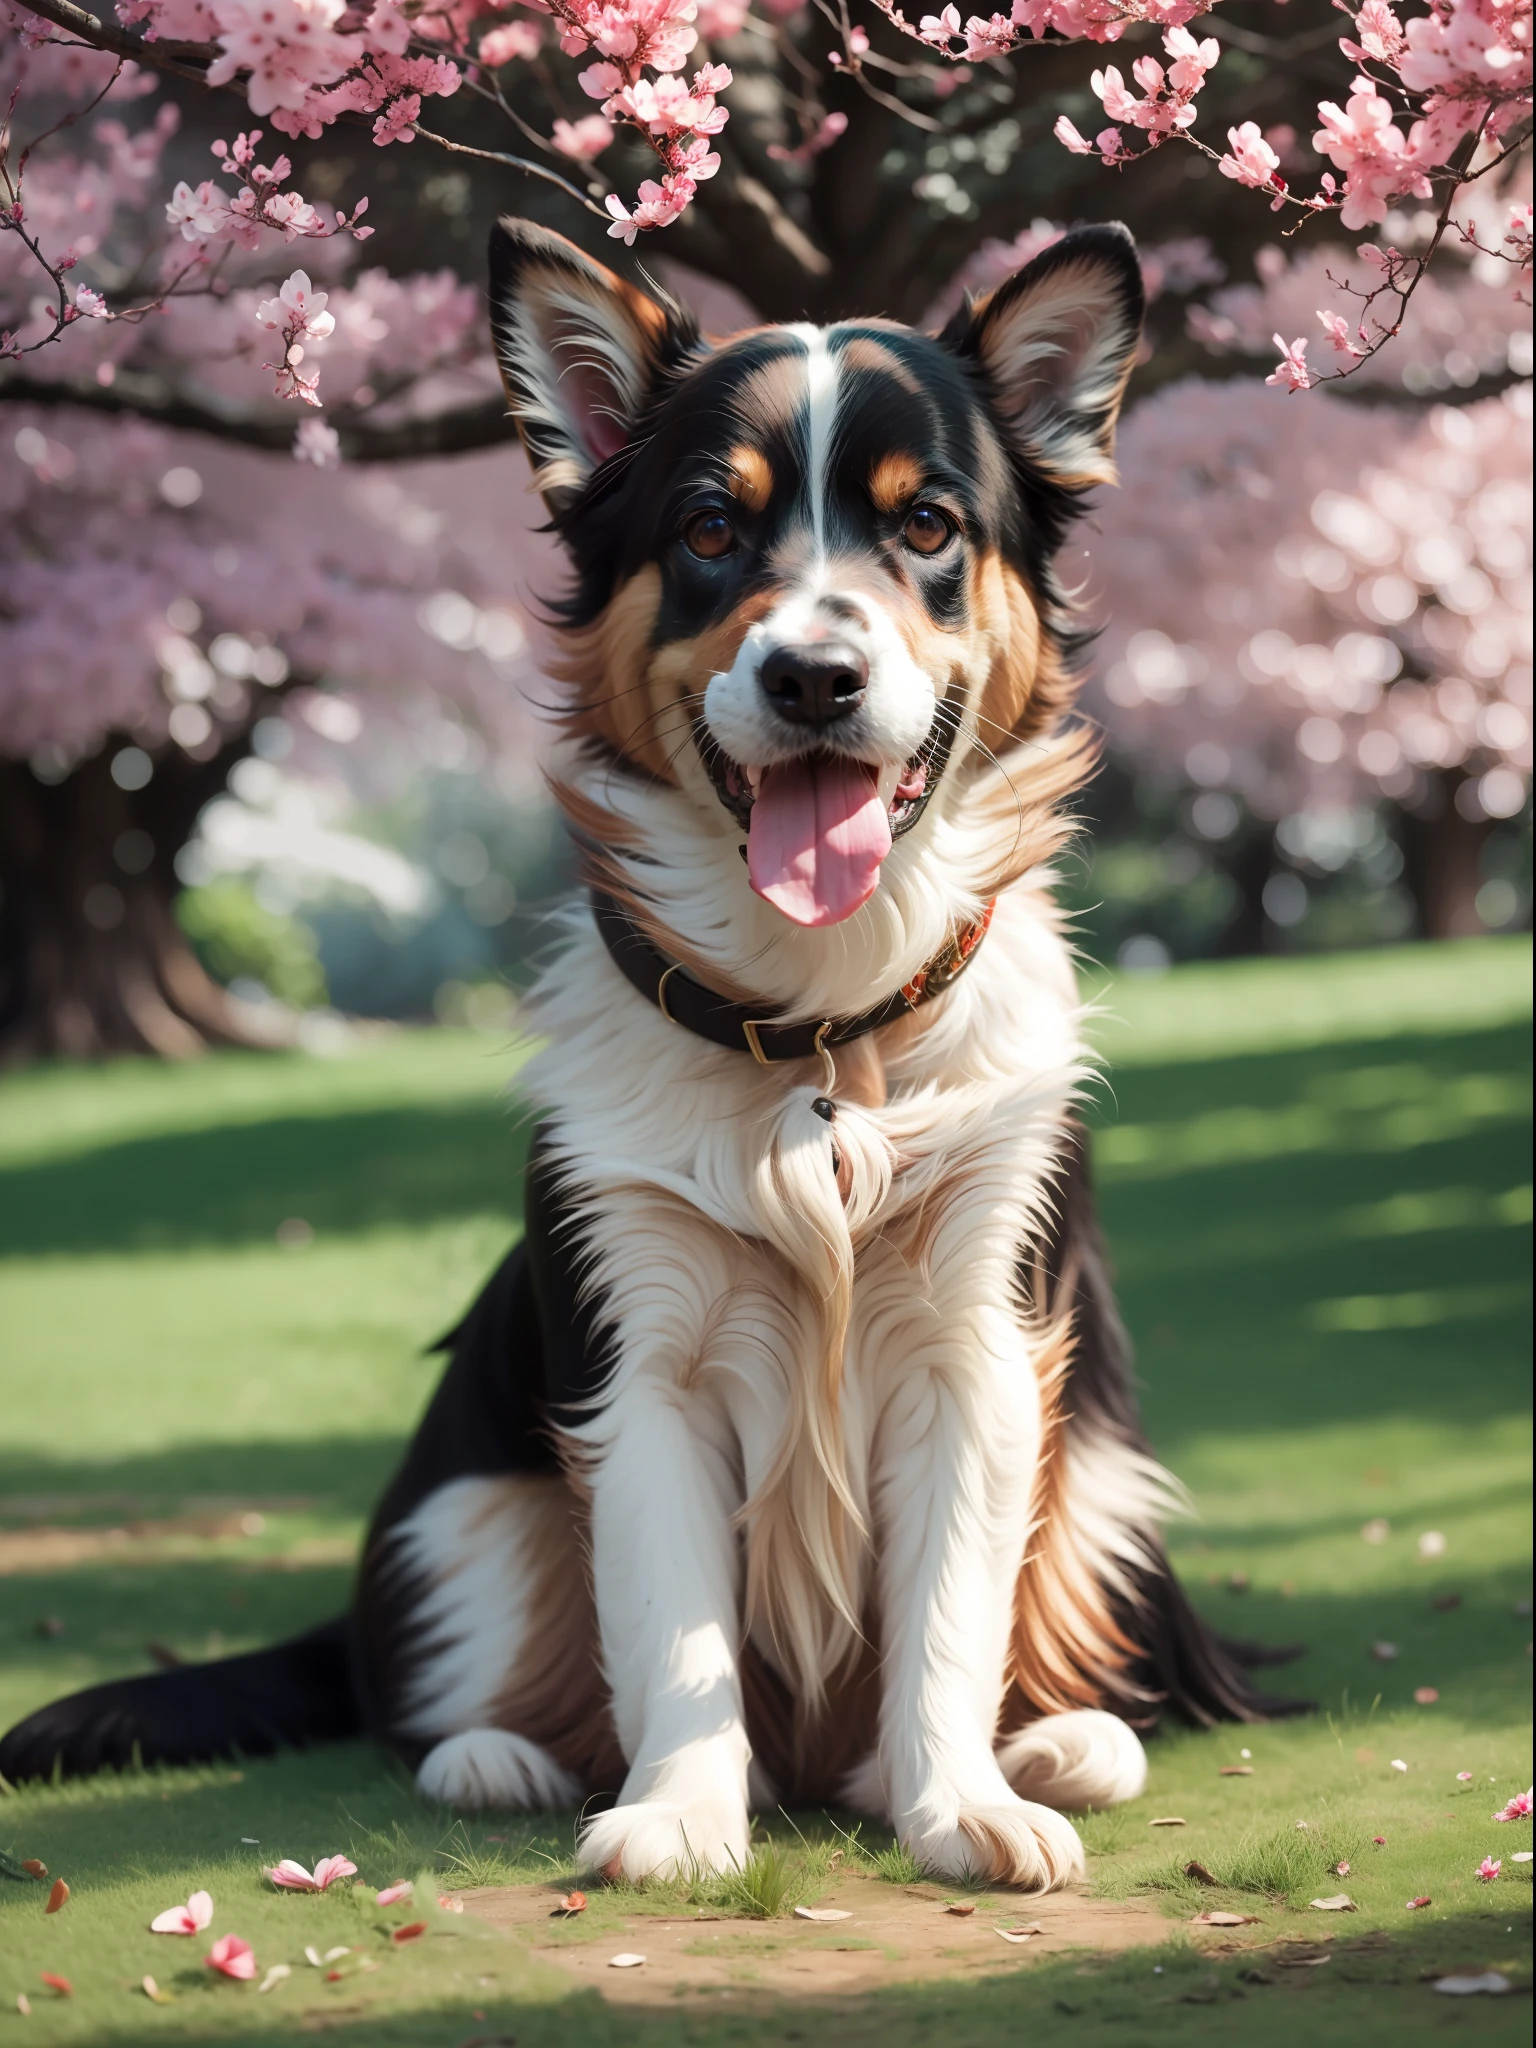 越南狗, 略显瘦, 坐在草坪上, 远处有一棵大树, 快乐的, 微笑, 杰作, 8千, 高分辨率, 最高质感, 脸型更好, 丰富的细节, --v6